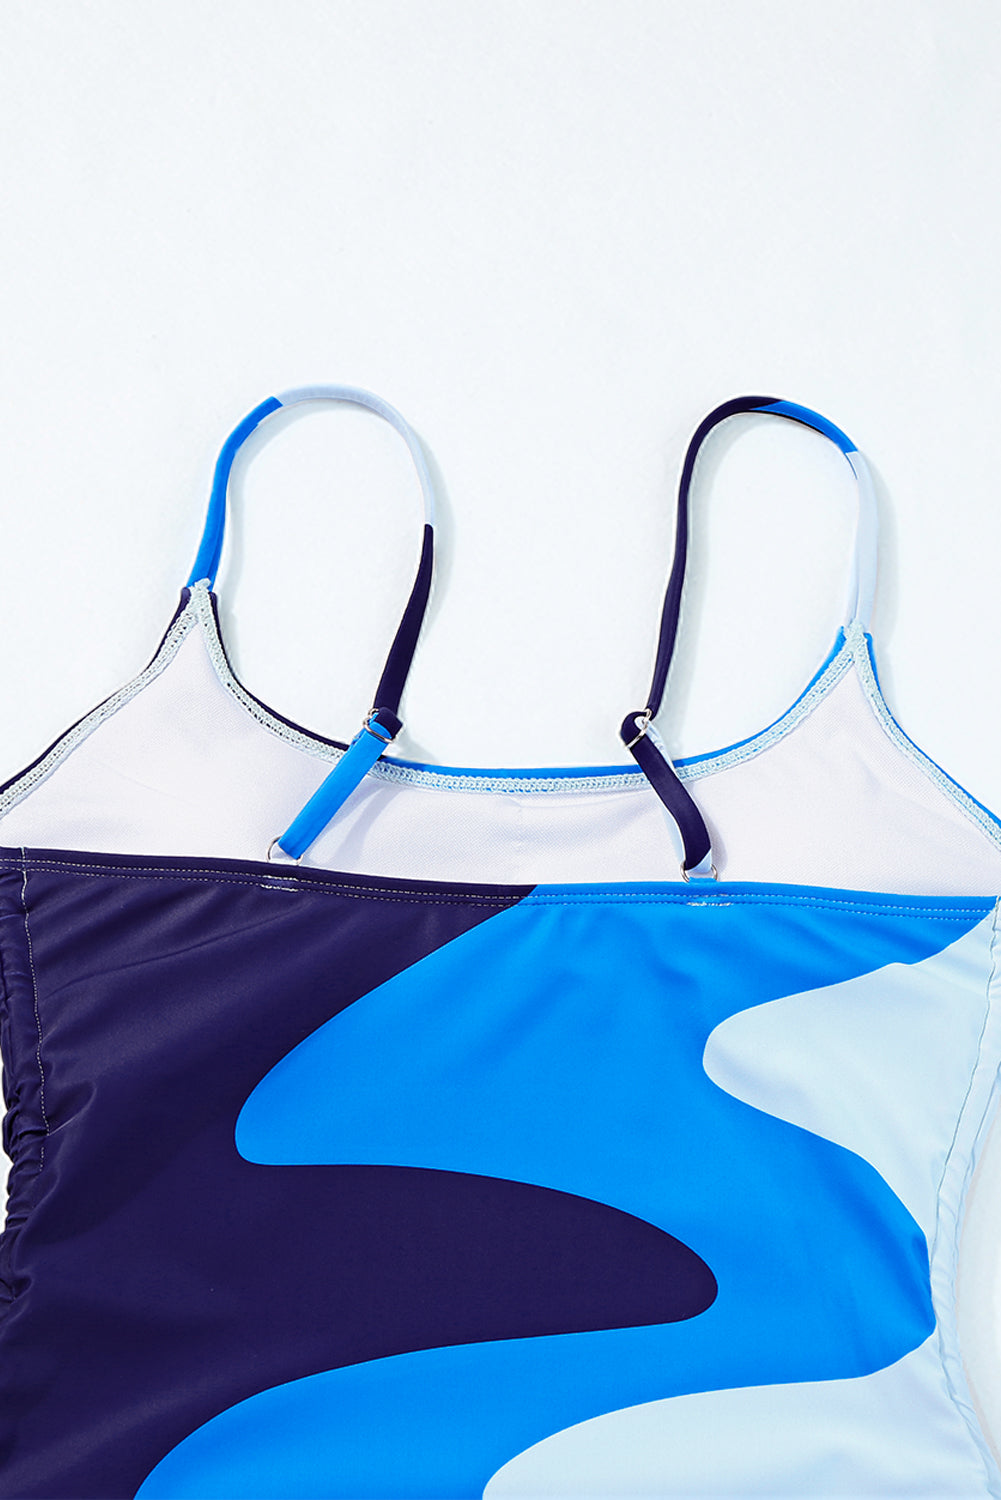 Himmelblauer, bedruckter Badeanzug mit Farbblock und Kordelzug an den Seiten